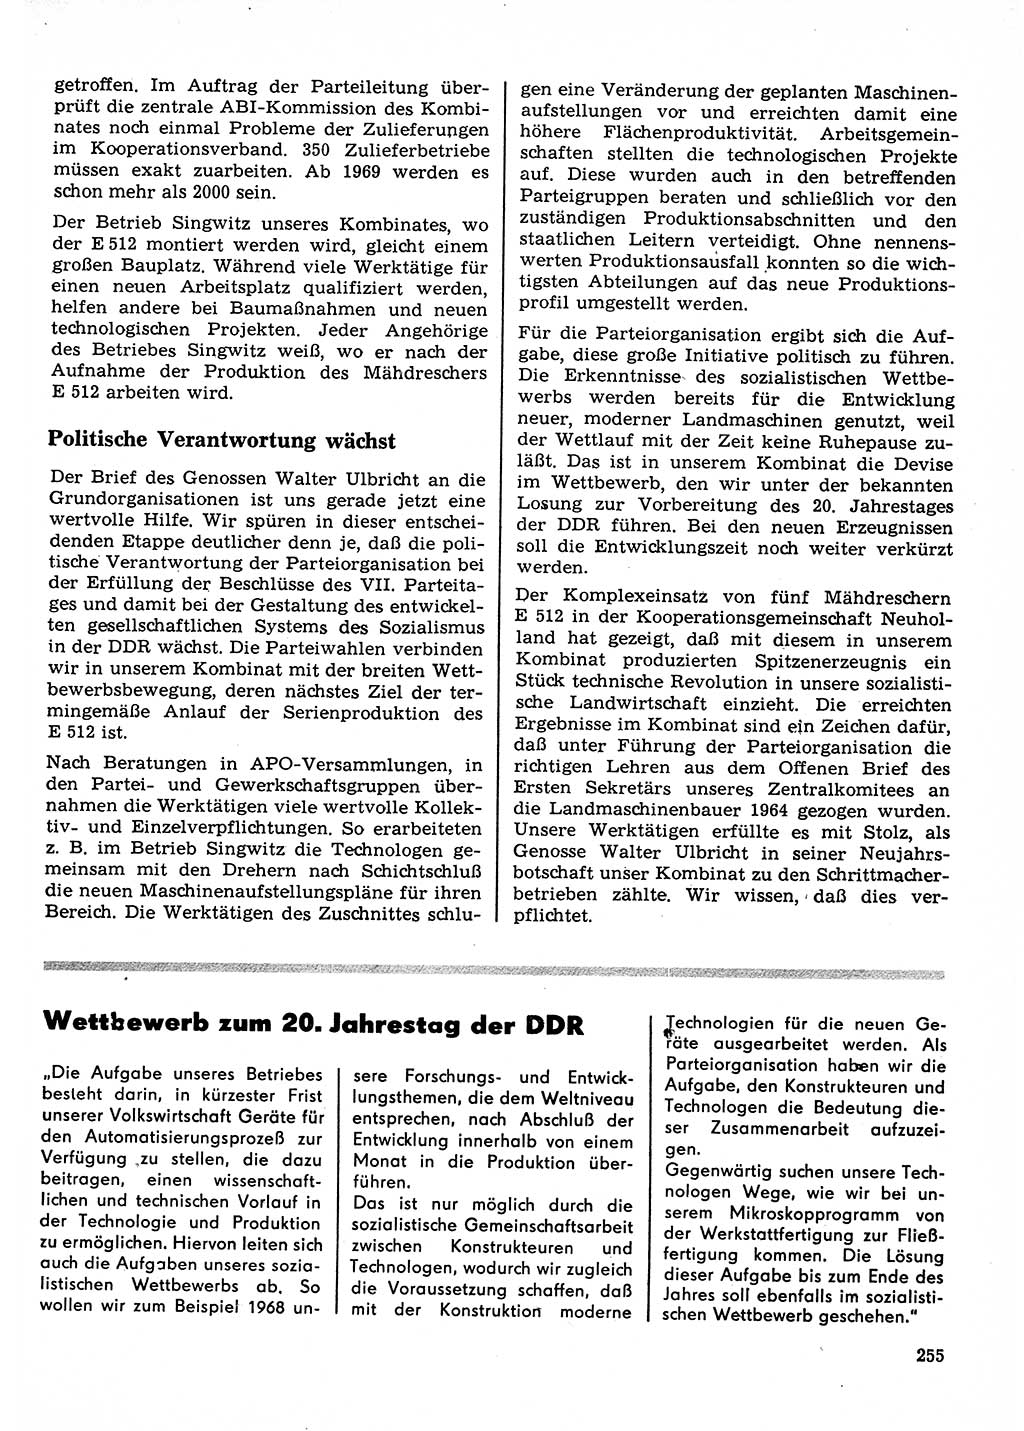 Neuer Weg (NW), Organ des Zentralkomitees (ZK) der SED (Sozialistische Einheitspartei Deutschlands) für Fragen des Parteilebens, 23. Jahrgang [Deutsche Demokratische Republik (DDR)] 1968, Seite 255 (NW ZK SED DDR 1968, S. 255)